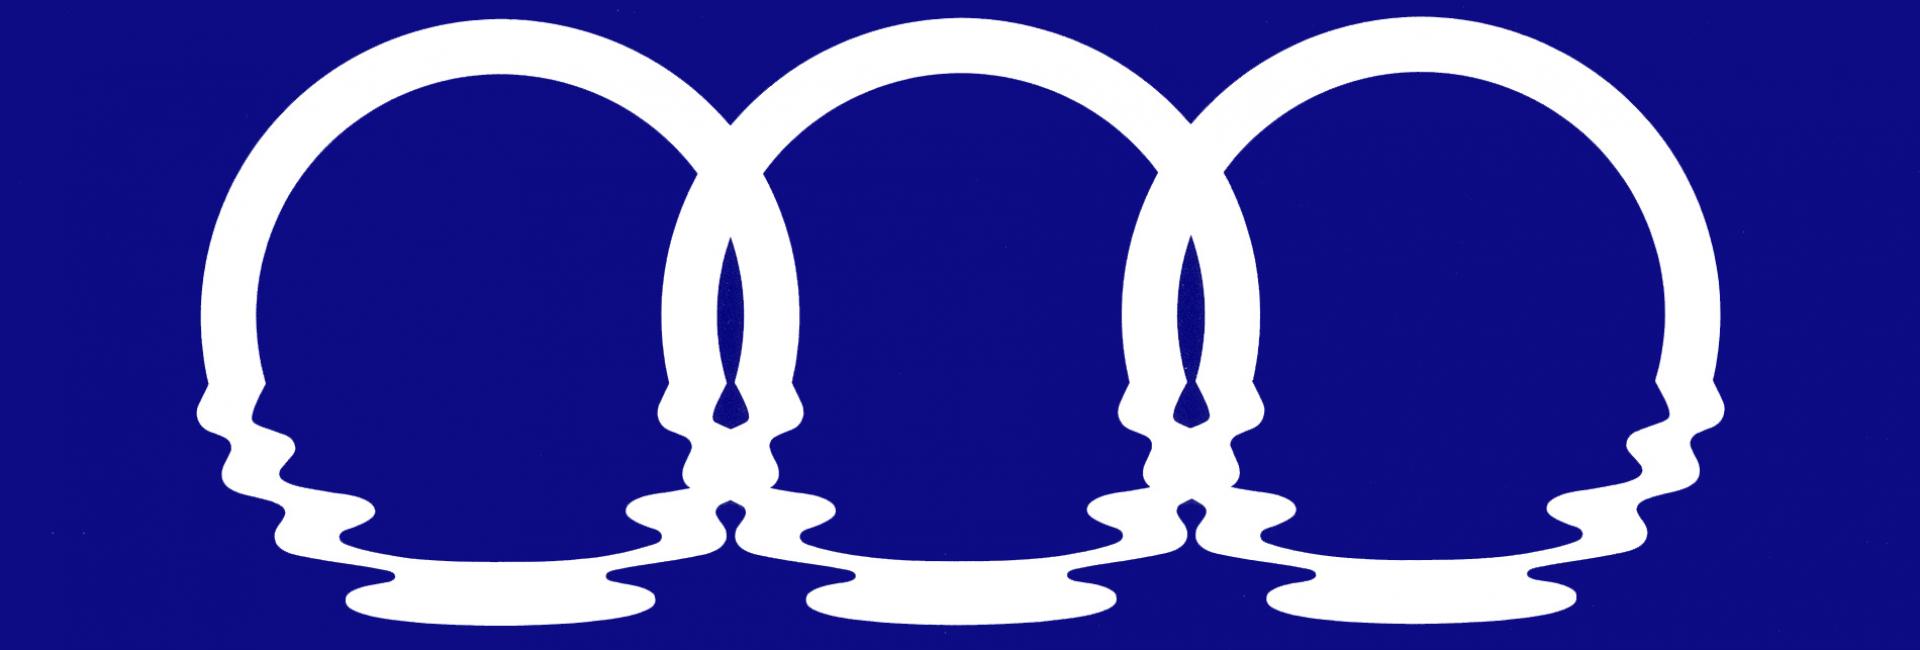 Exposition Logo 3